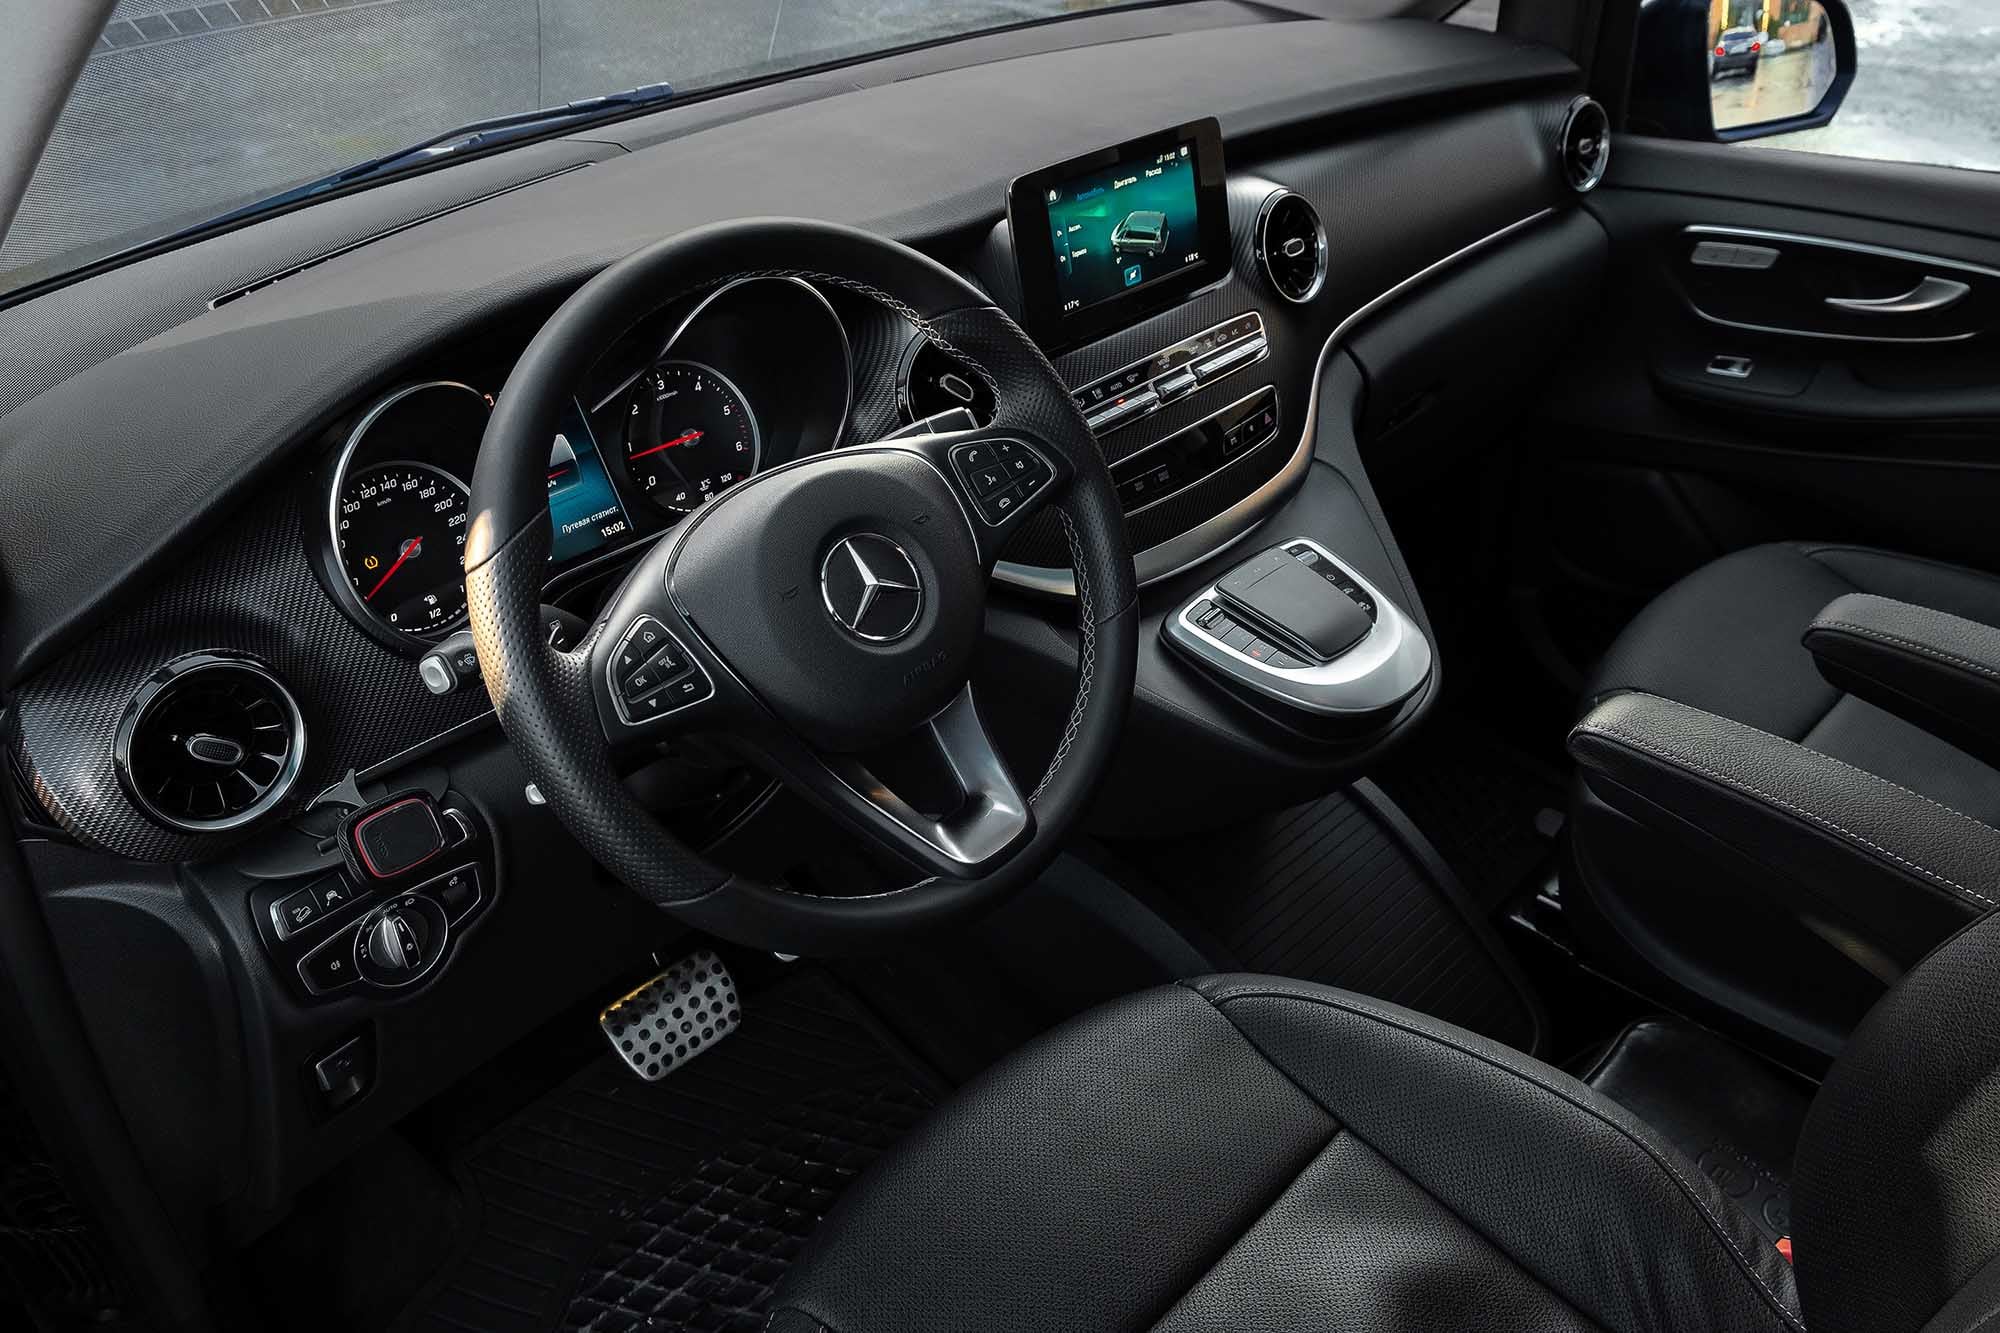 Аренда  Mercedes-Benz V-class 250D Extra Long 4MATIC Avantgarde Black 7+1  7 класса 2019-2022 года в городе Минск от 110 $/сутки,  двигатель: ДТ , объем 2.1 литров, КАСКО (Мультидрайв), без водителя, вид 4 - West Group